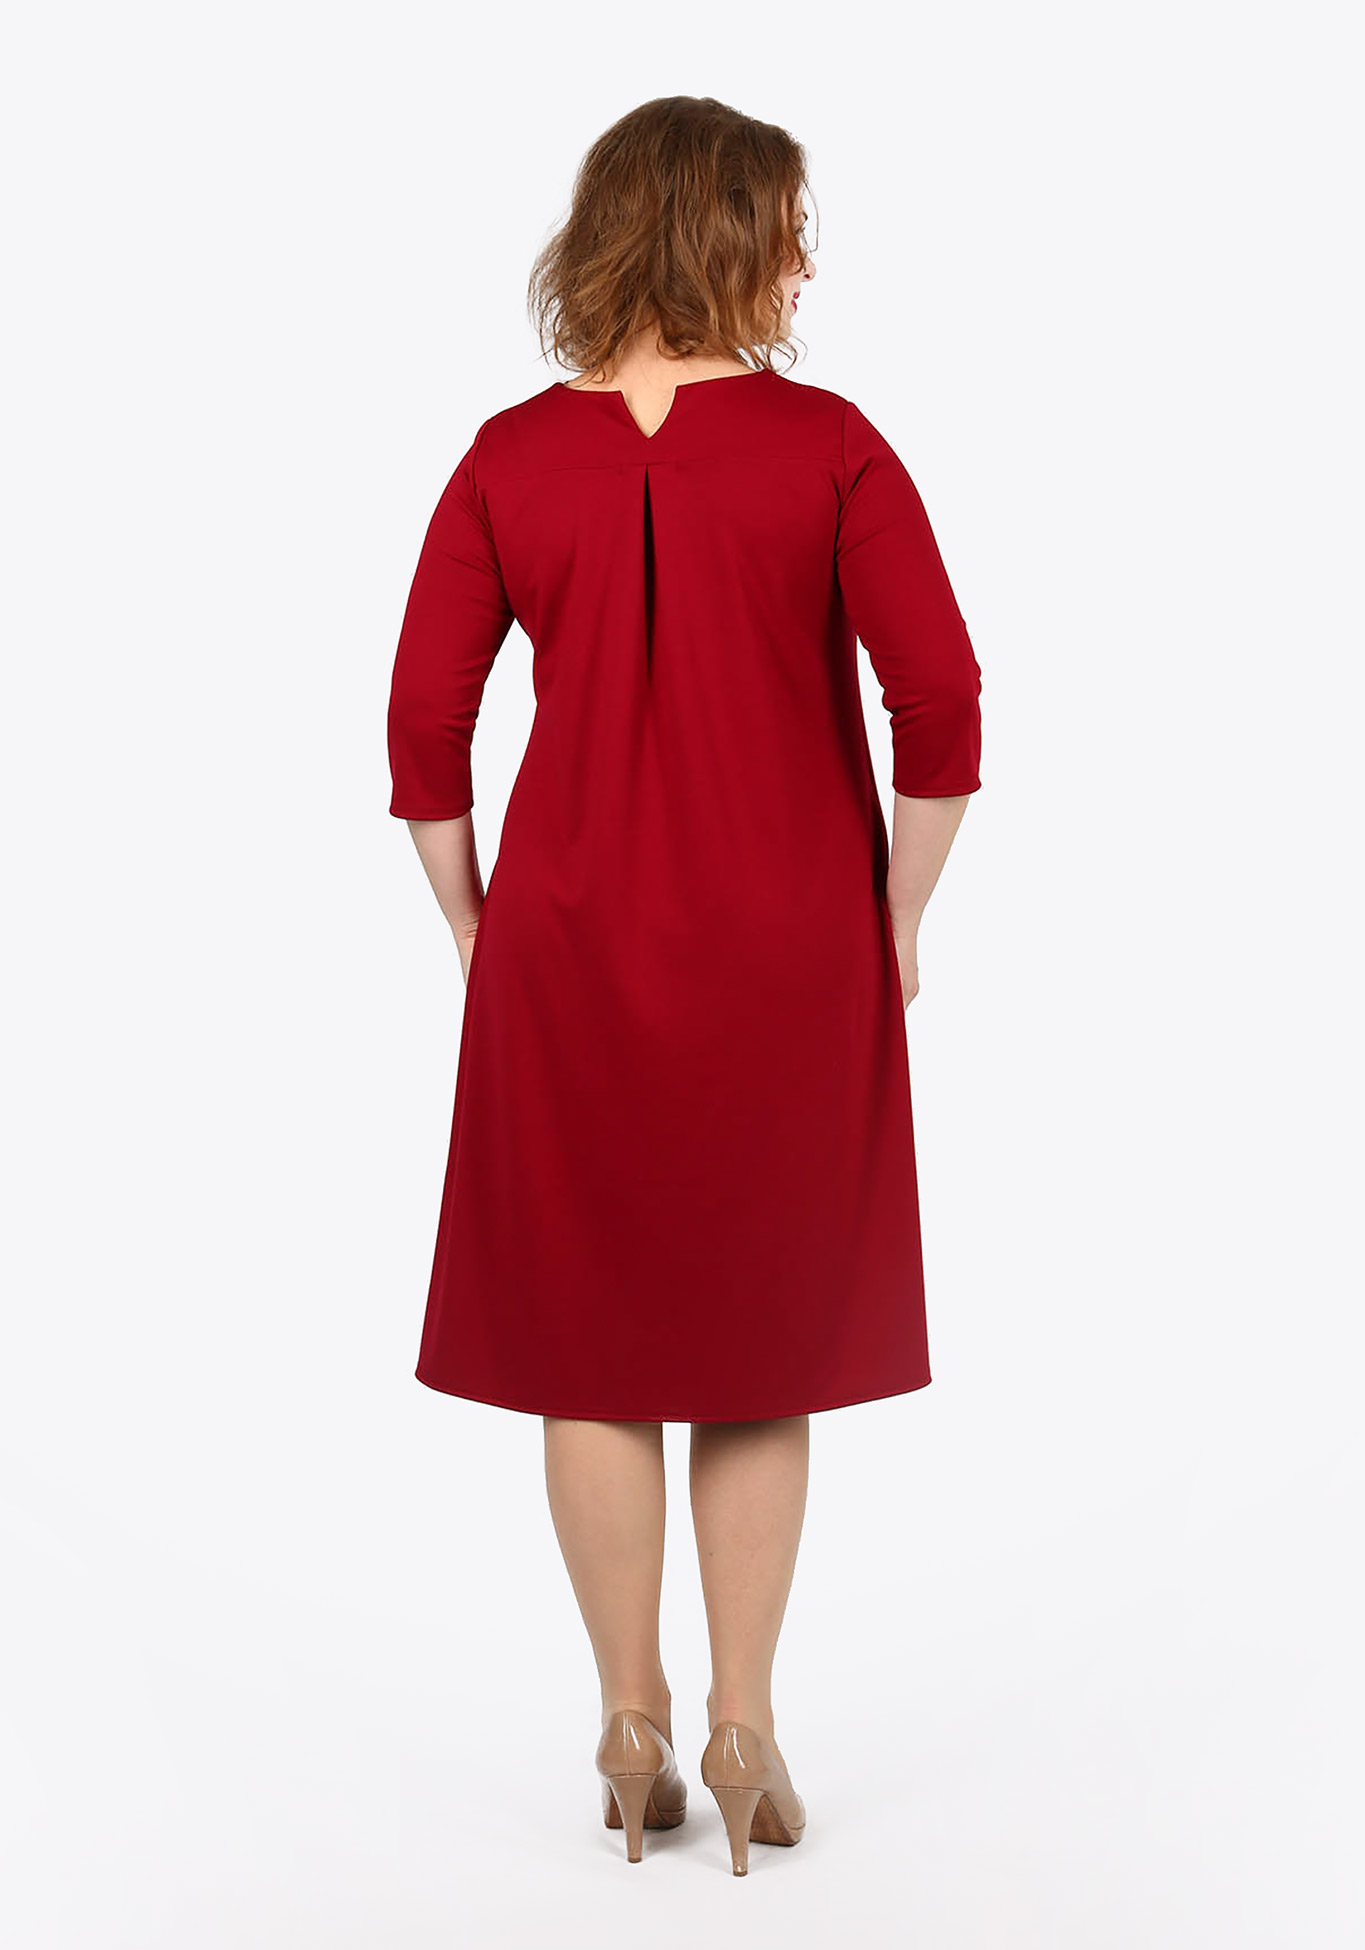 Платье расклешенного кроя с карманами Bianka Modeno, размер 50, цвет красный - фото 4